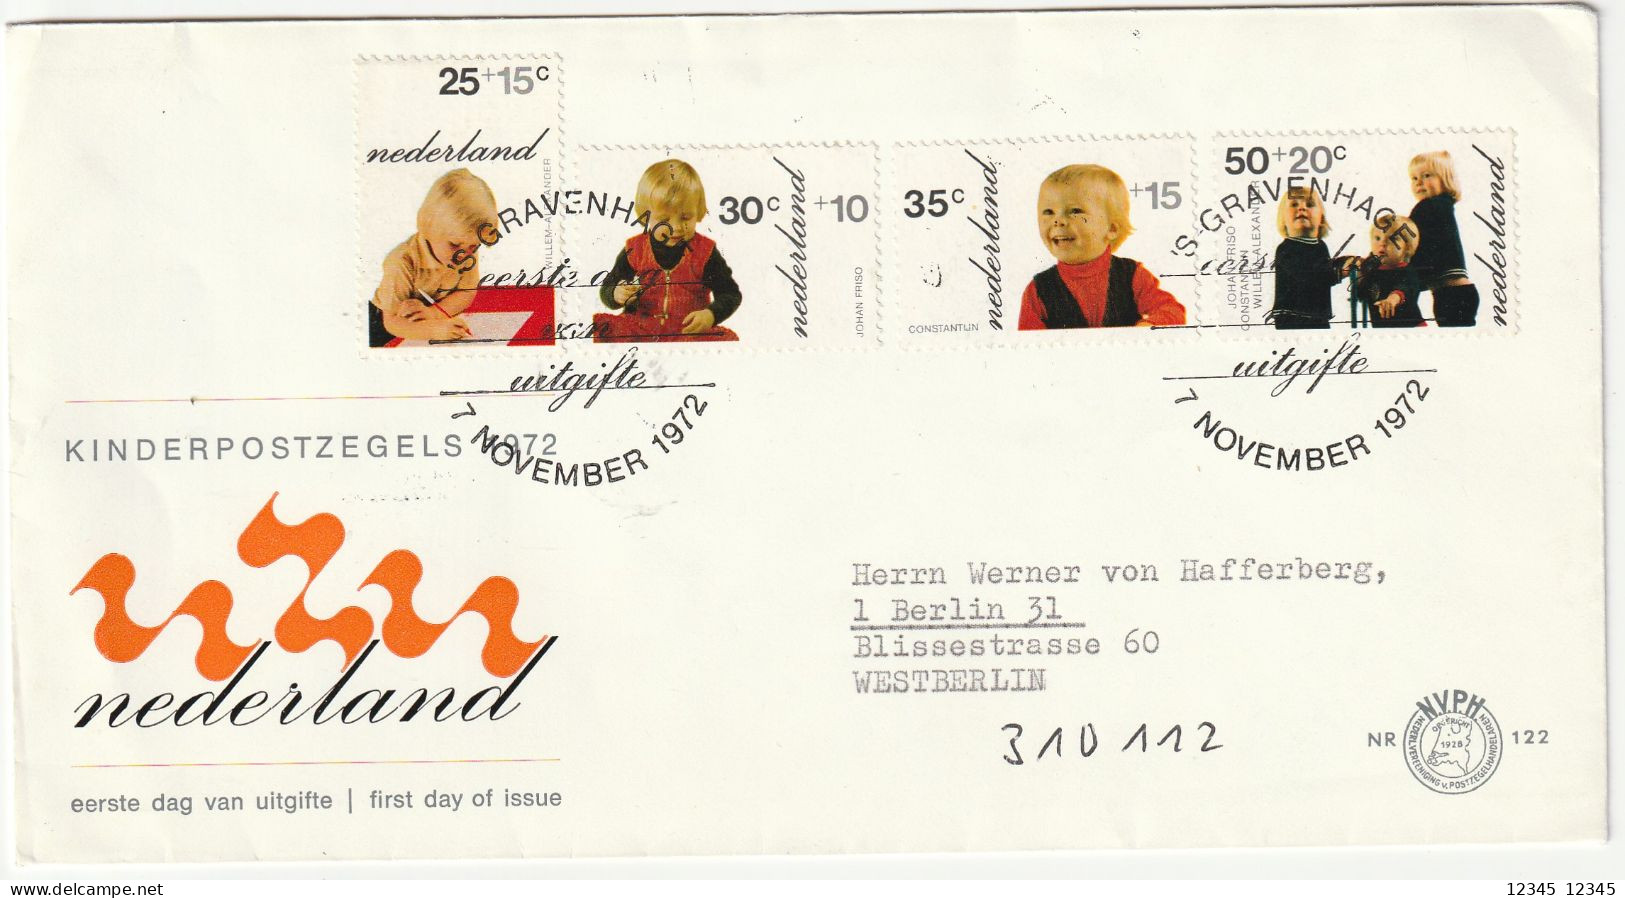 Nederland 1977, 1022 PM1, Children's Stamp - Errors & Oddities